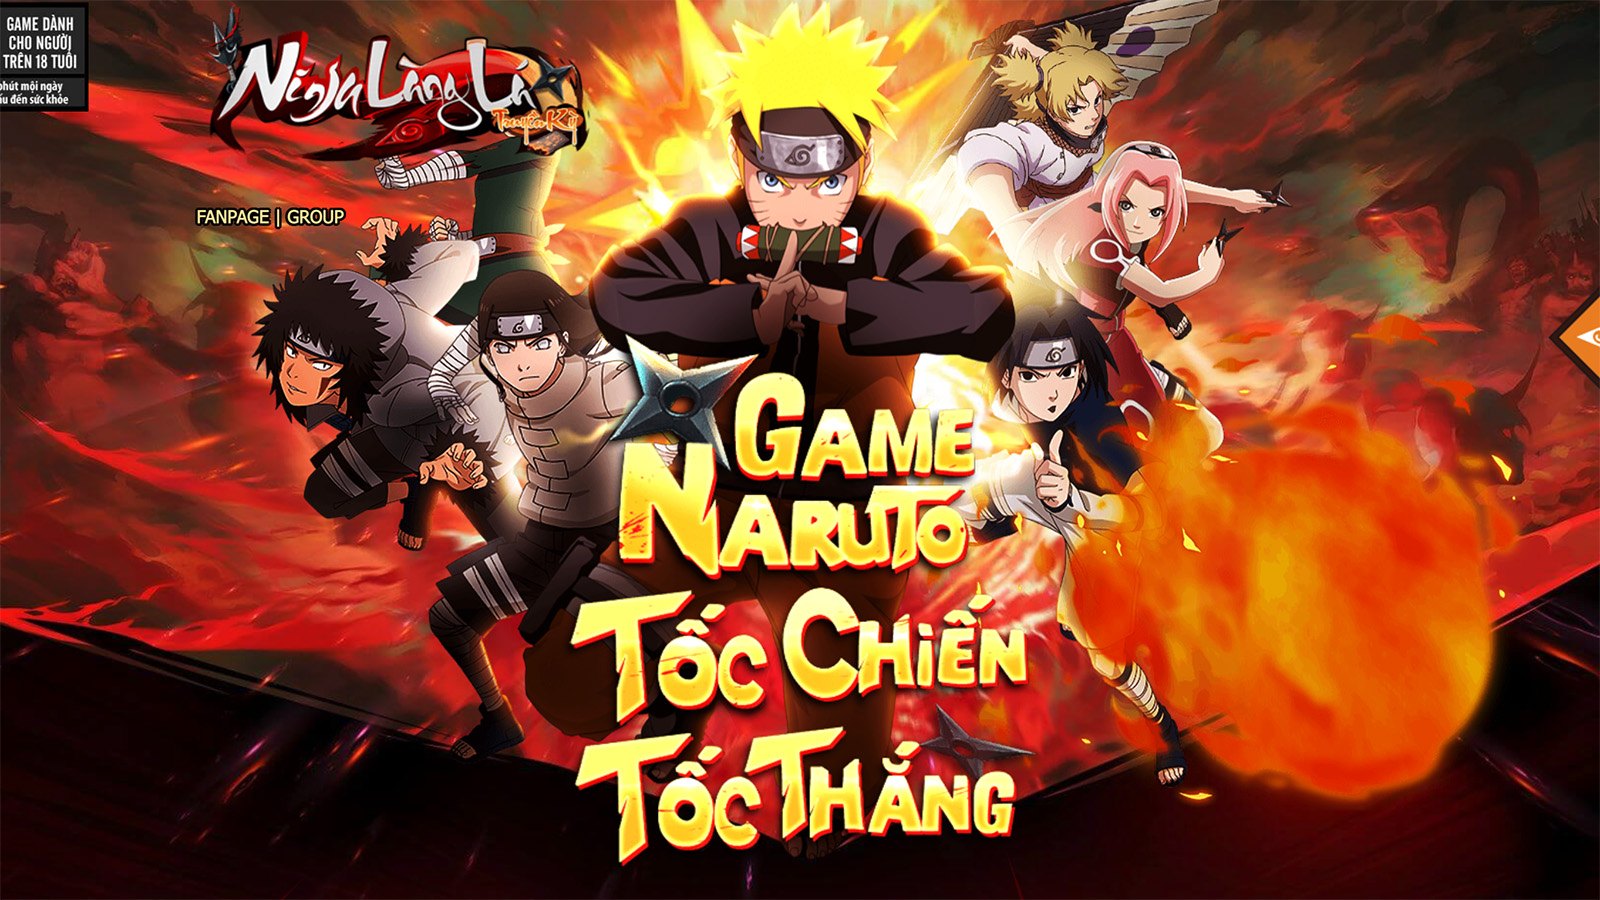 Ninja Làng Lá: Truyền Kỳ, tựa game Naruto sắp ra mắt có gì hấp dẫn?